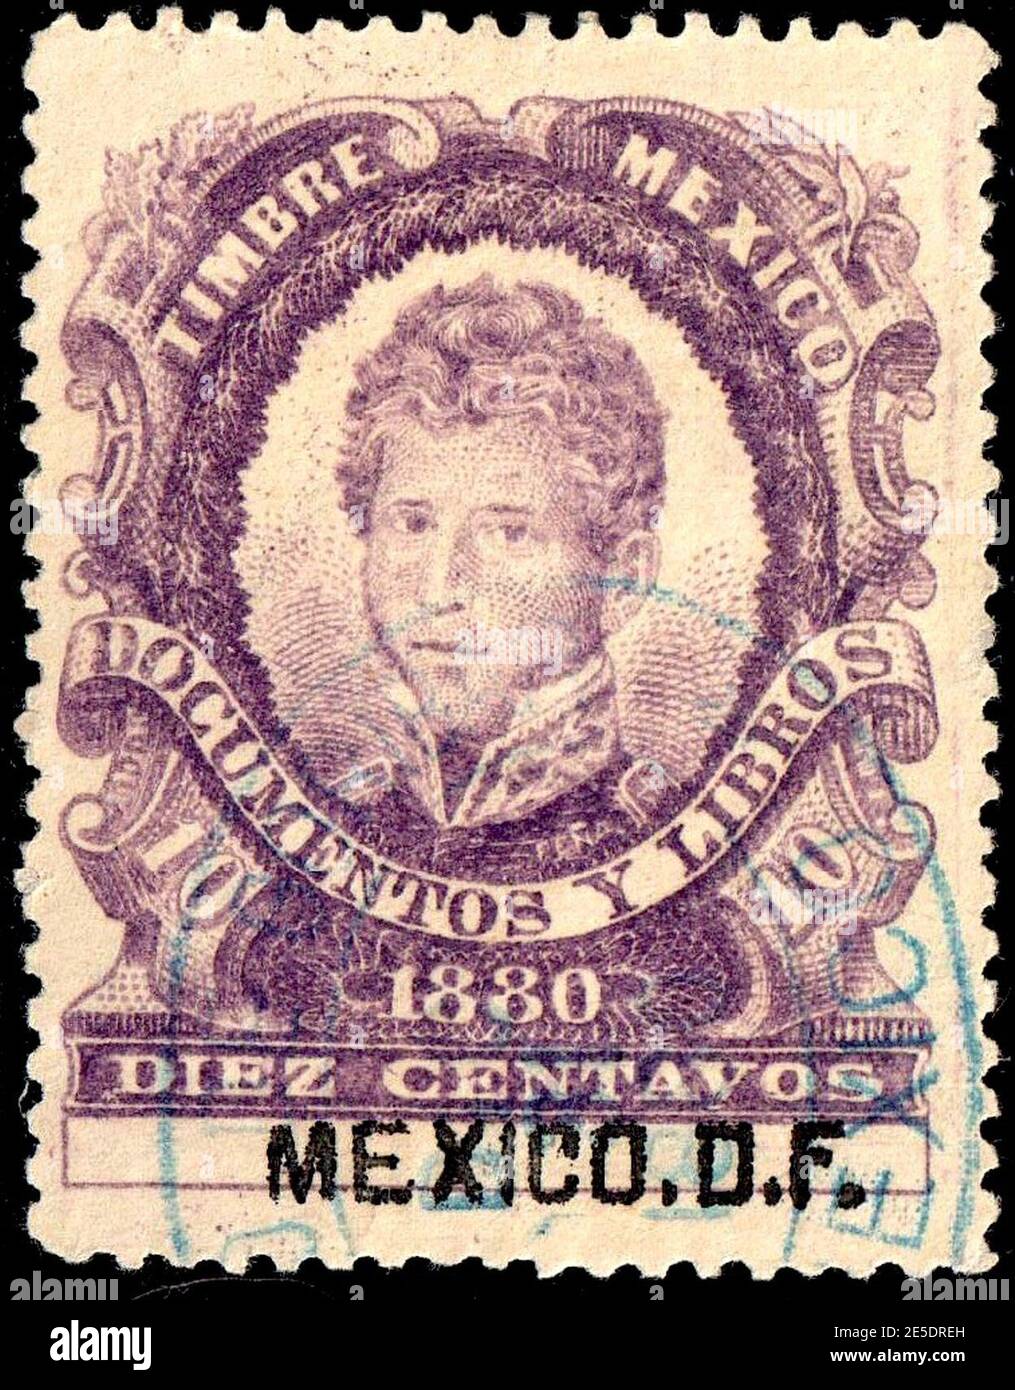 Mexico 1880 revenue F75 Mexico DF. Stock Photo